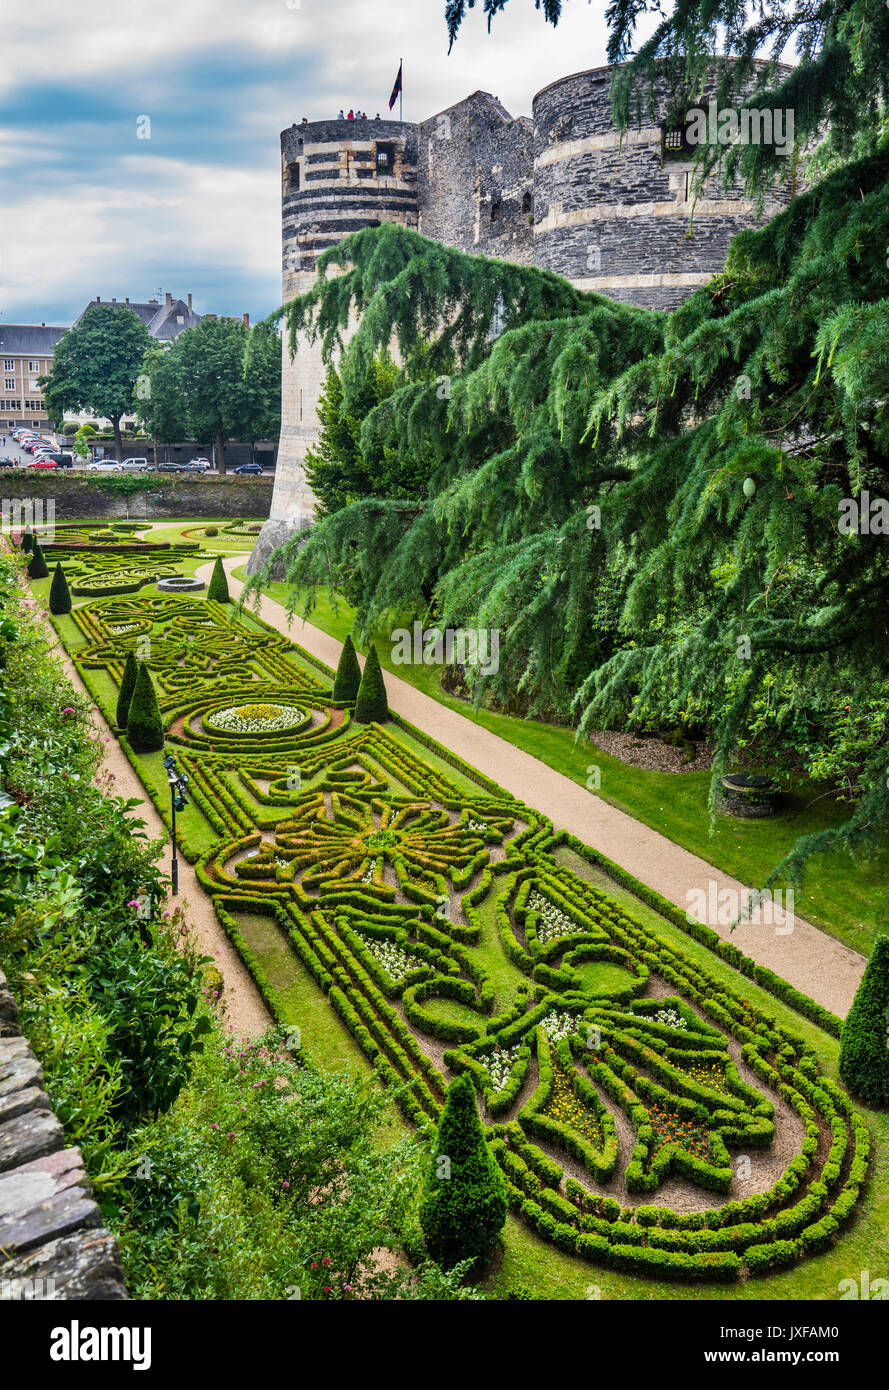 Francia, País del Loira, Angers, Château d'Angers, jardines ornamentados debajo del oeste de almenas del castillo medieval. Foto de stock